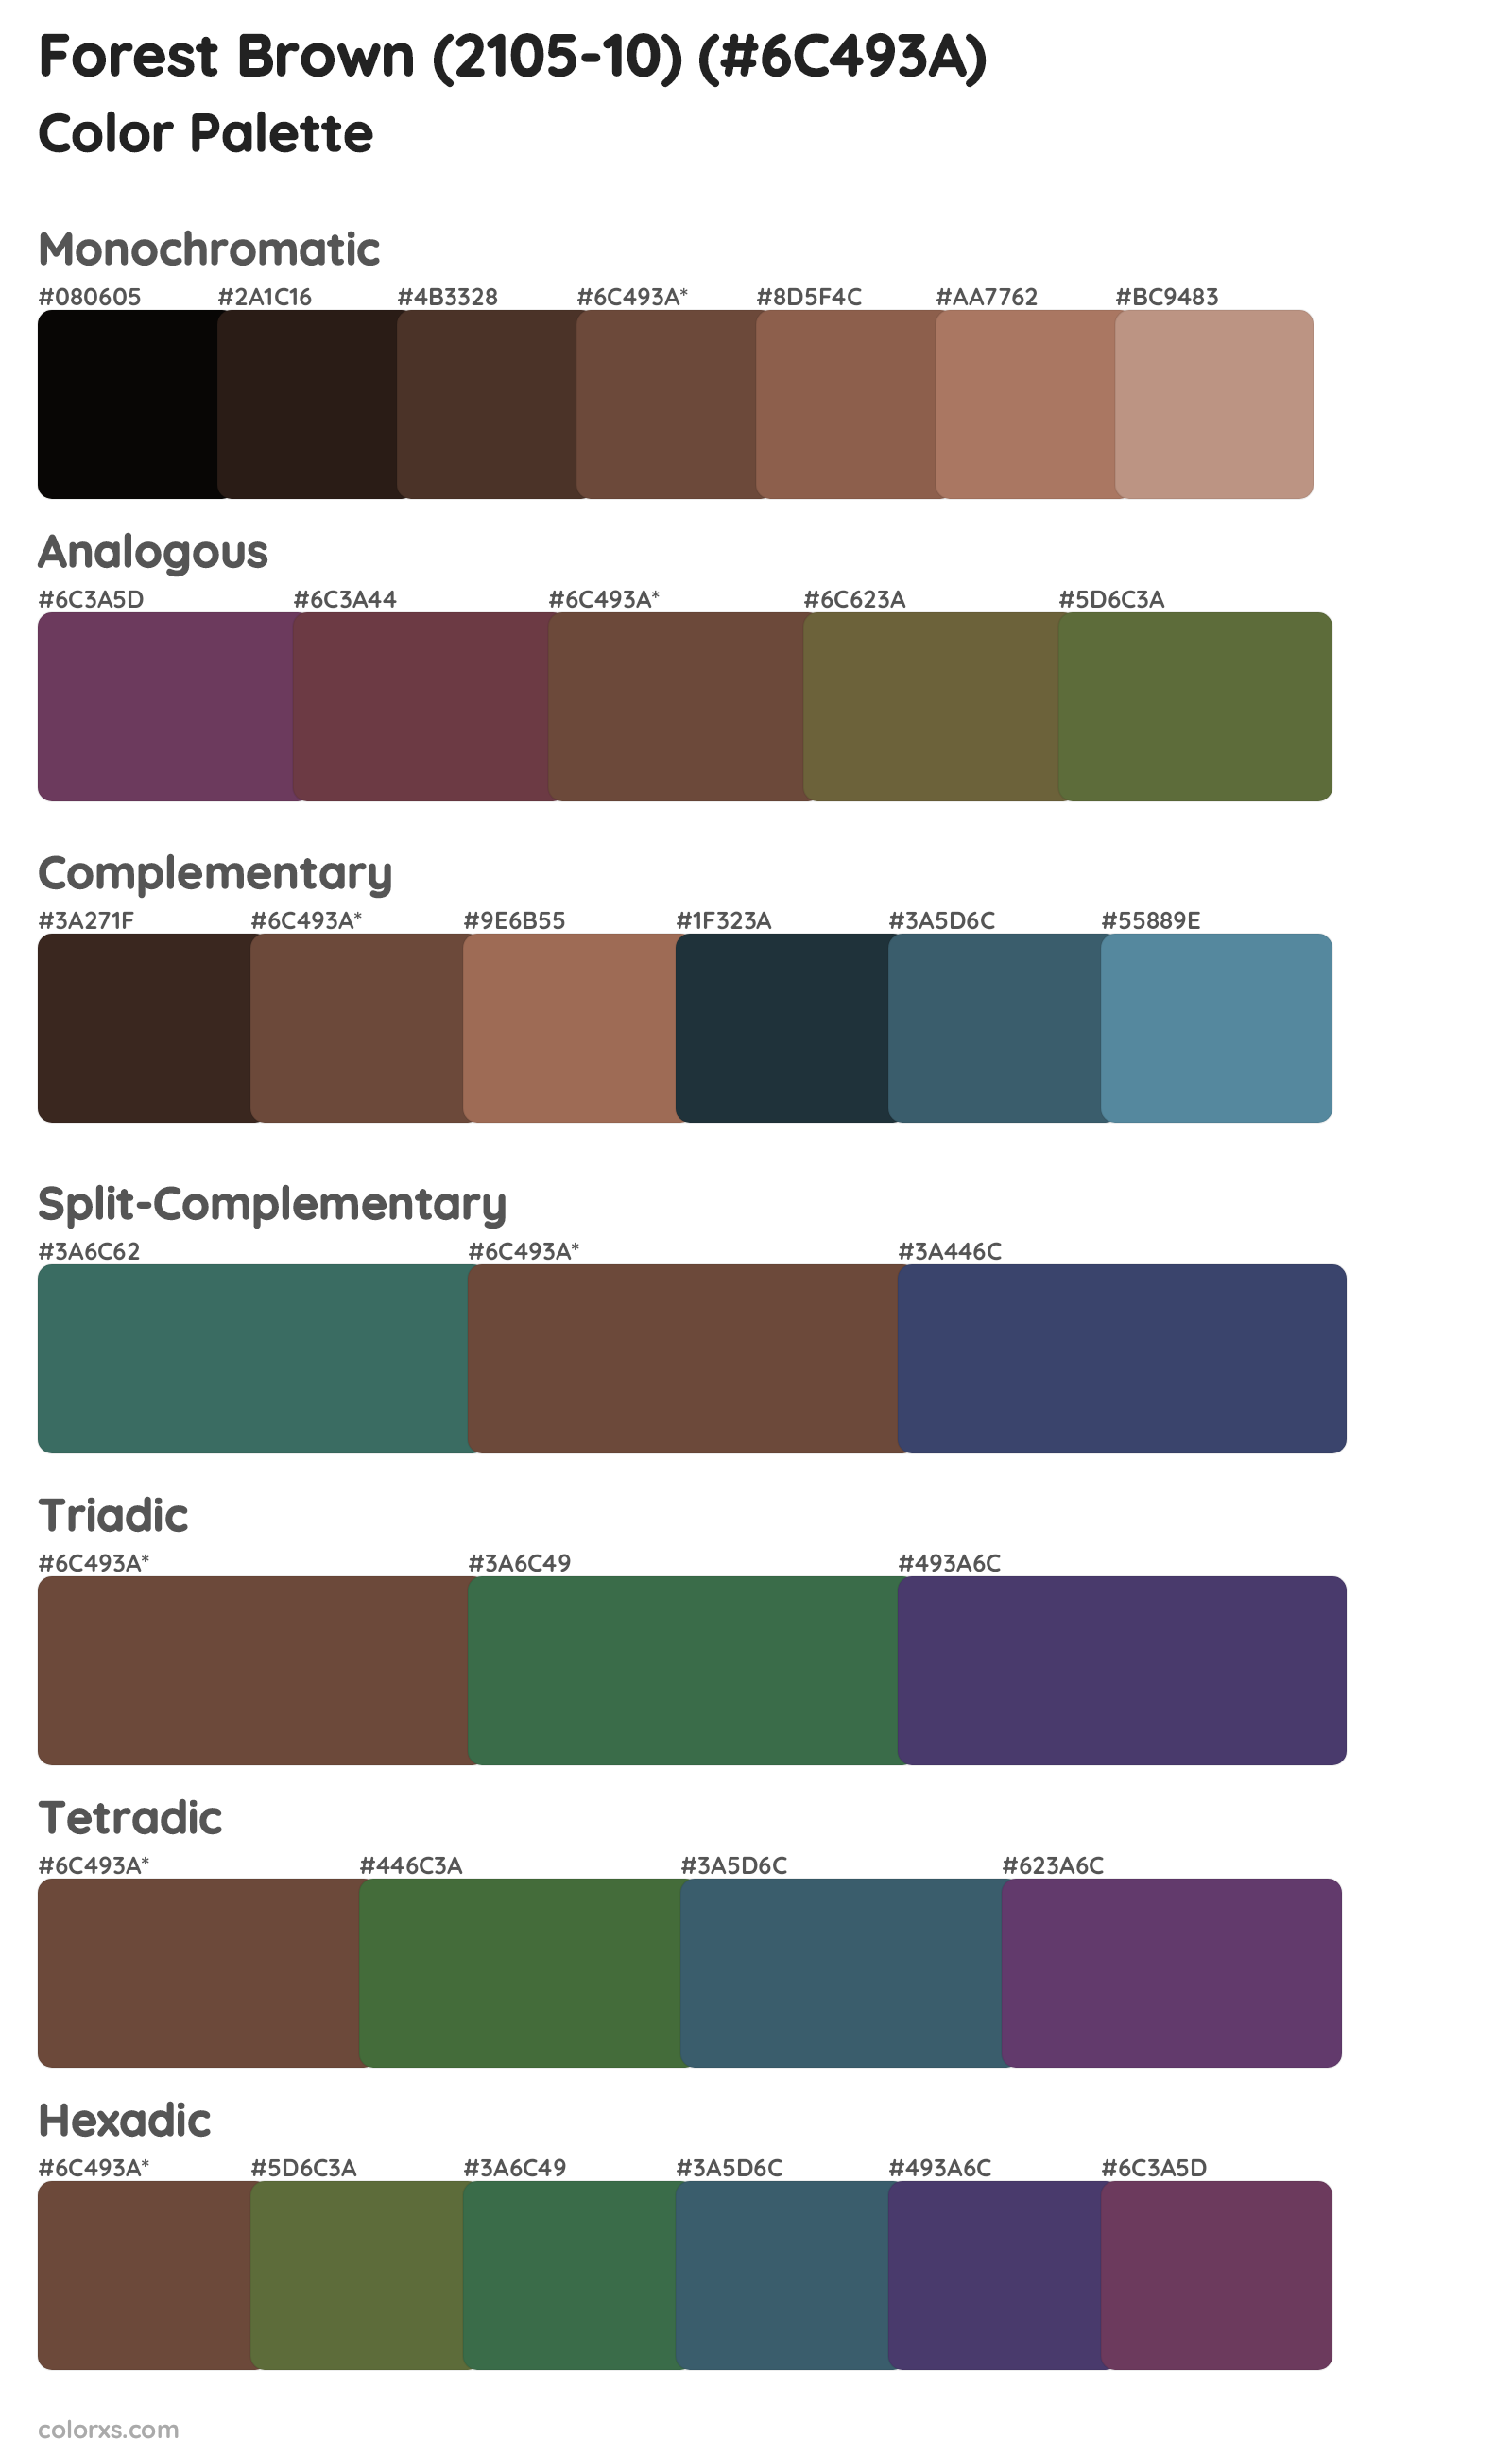 Forest Brown (2105-10) Color Scheme Palettes